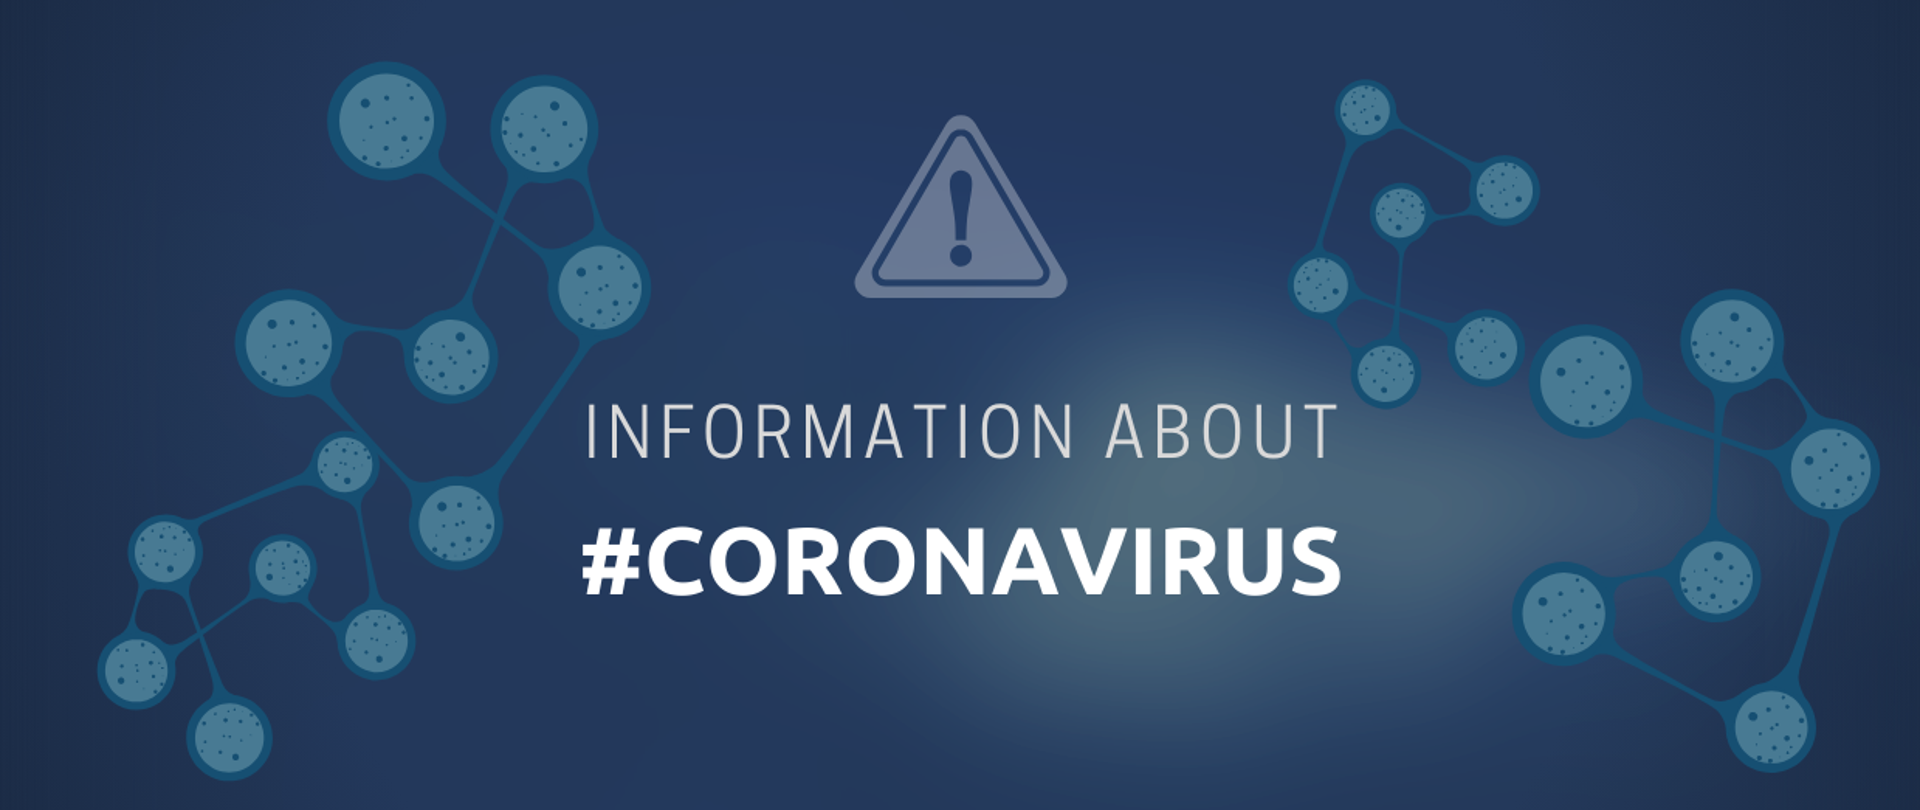 Coronavirus_information